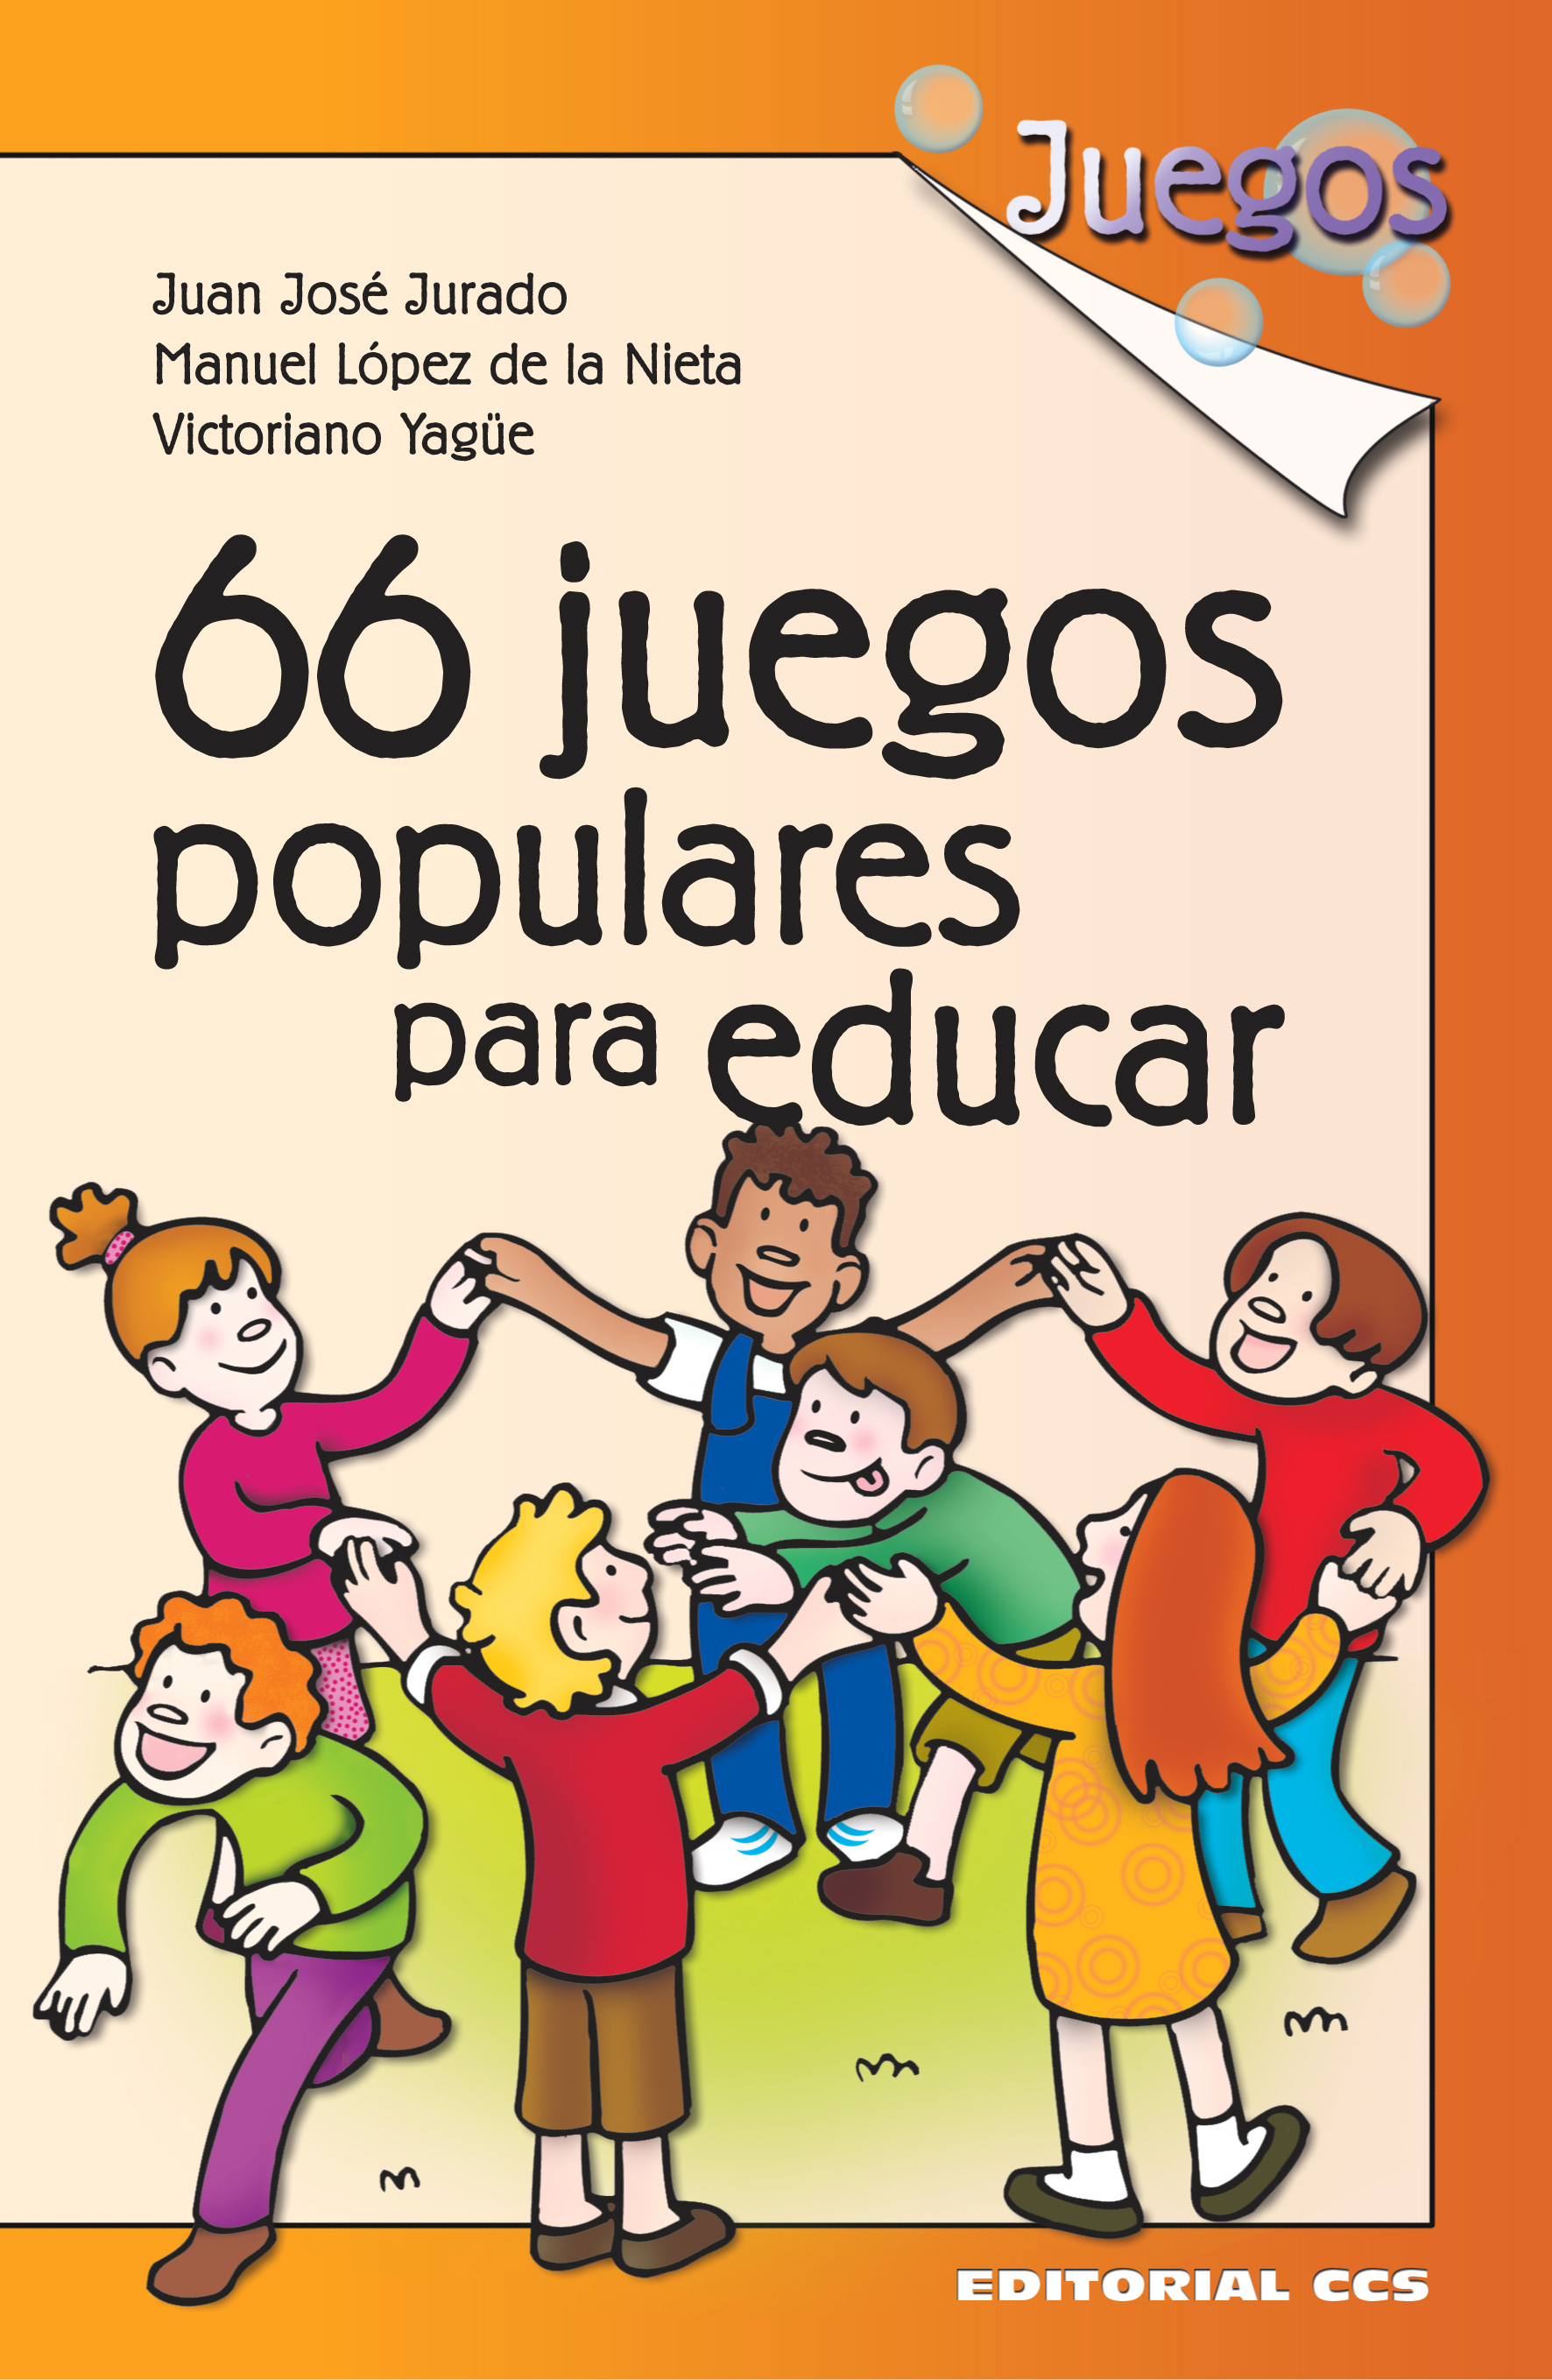 eBooks Kindle: Juegos Tradicionales: Juegos que jugamos aquí  (Spanish Edition), Editorial Staff, Publisher's, Alías García, José Antonio